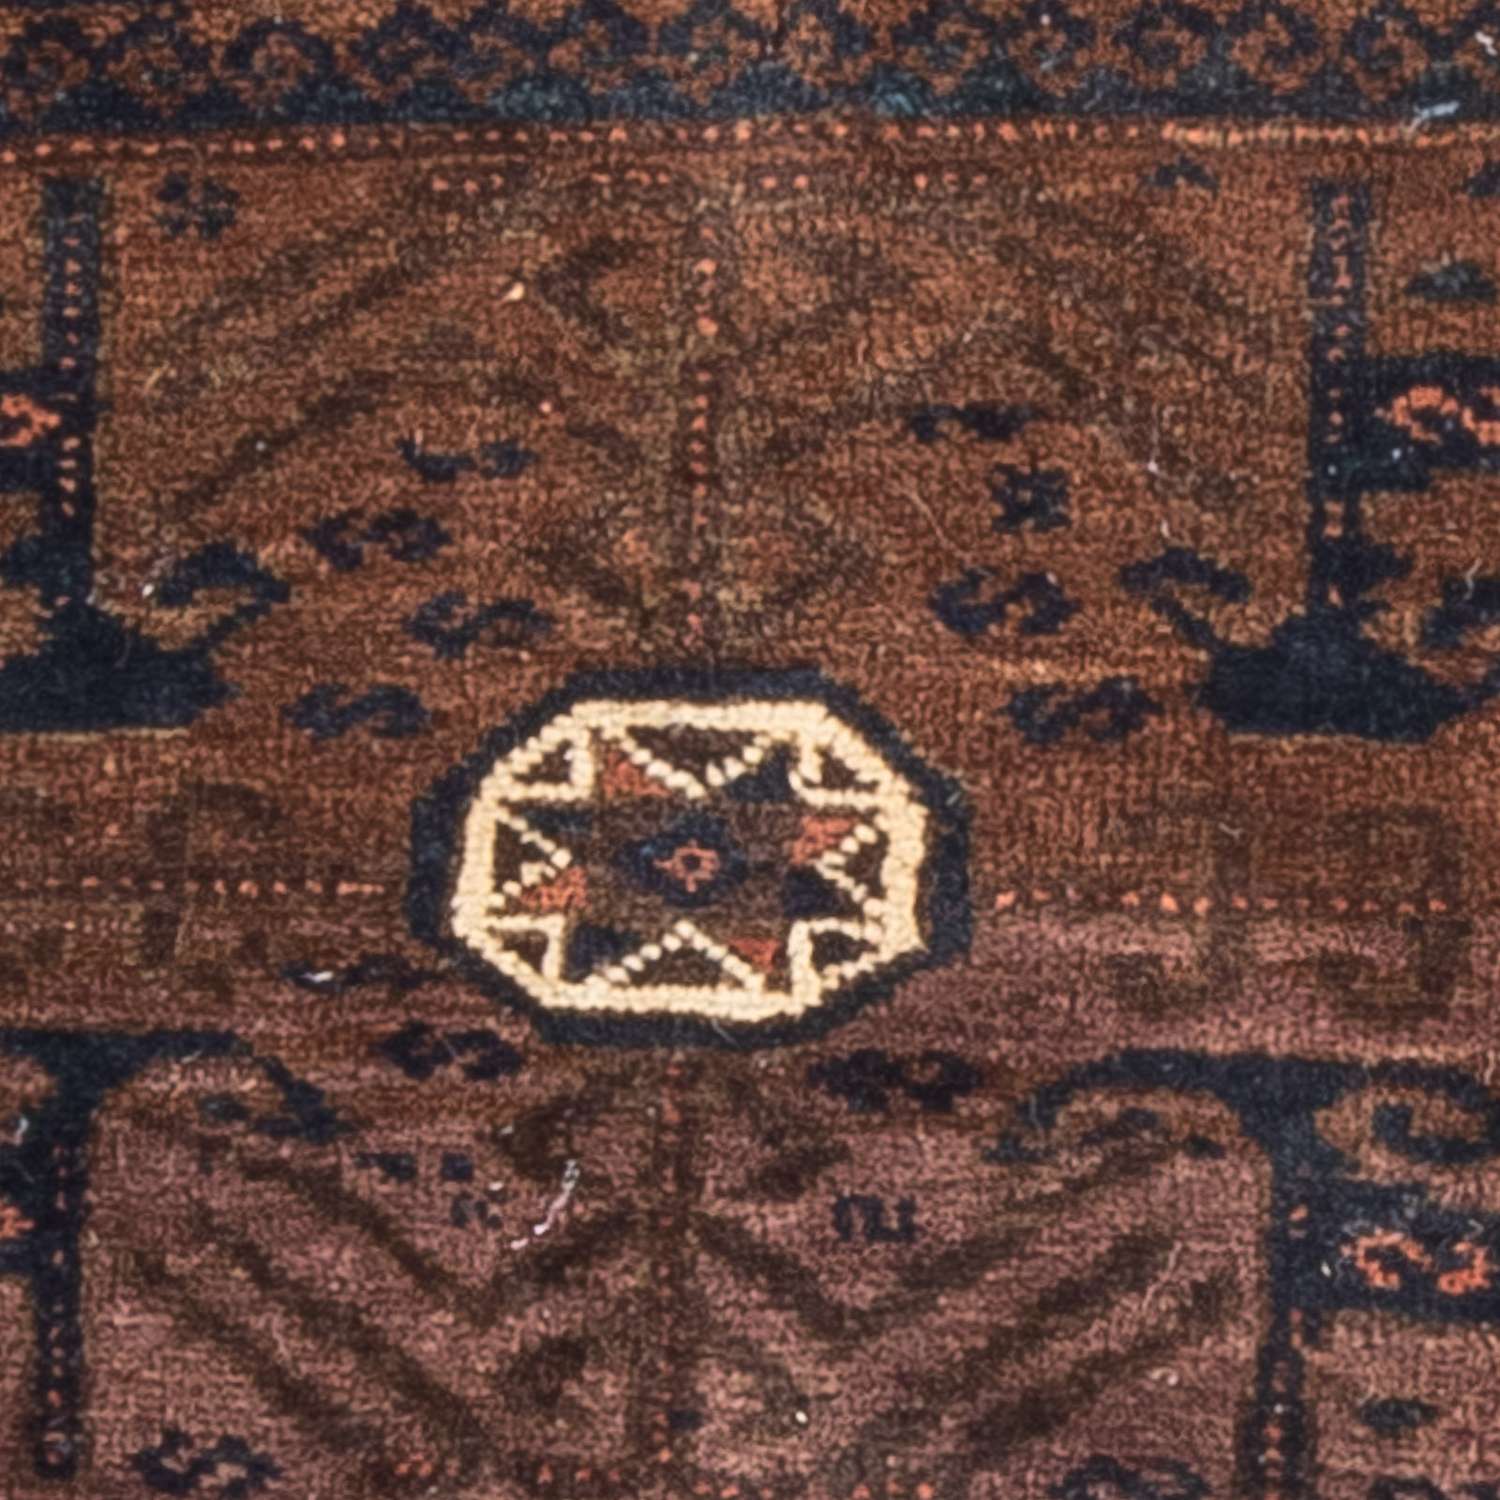 Afghan Rug square  - 80 x 80 cm - brown